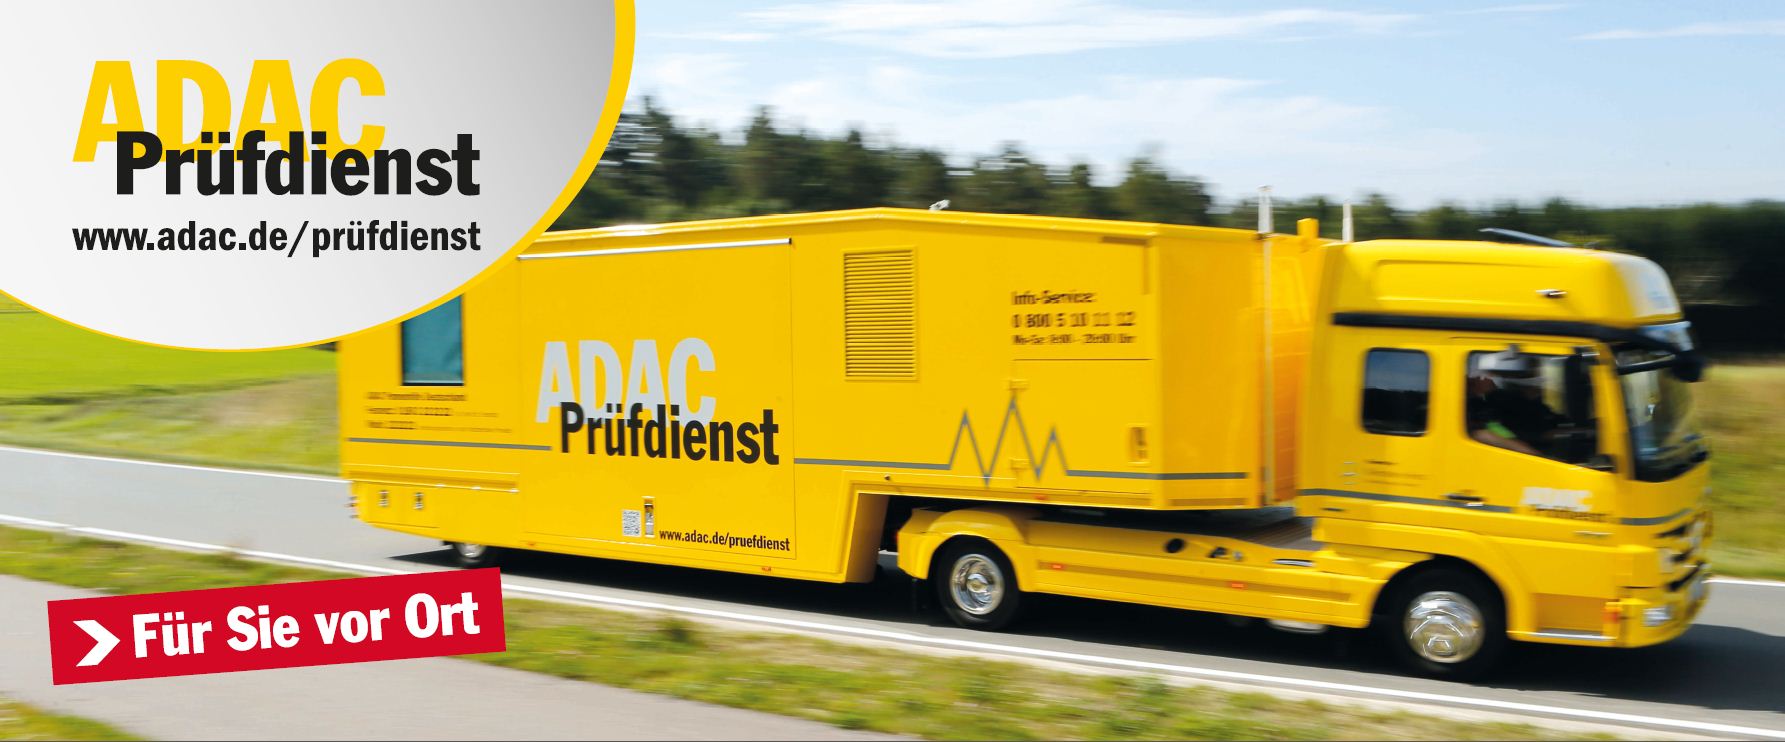 Der mobile Prüfdienst des ADAC Nordbayern ist wieder unterwegs